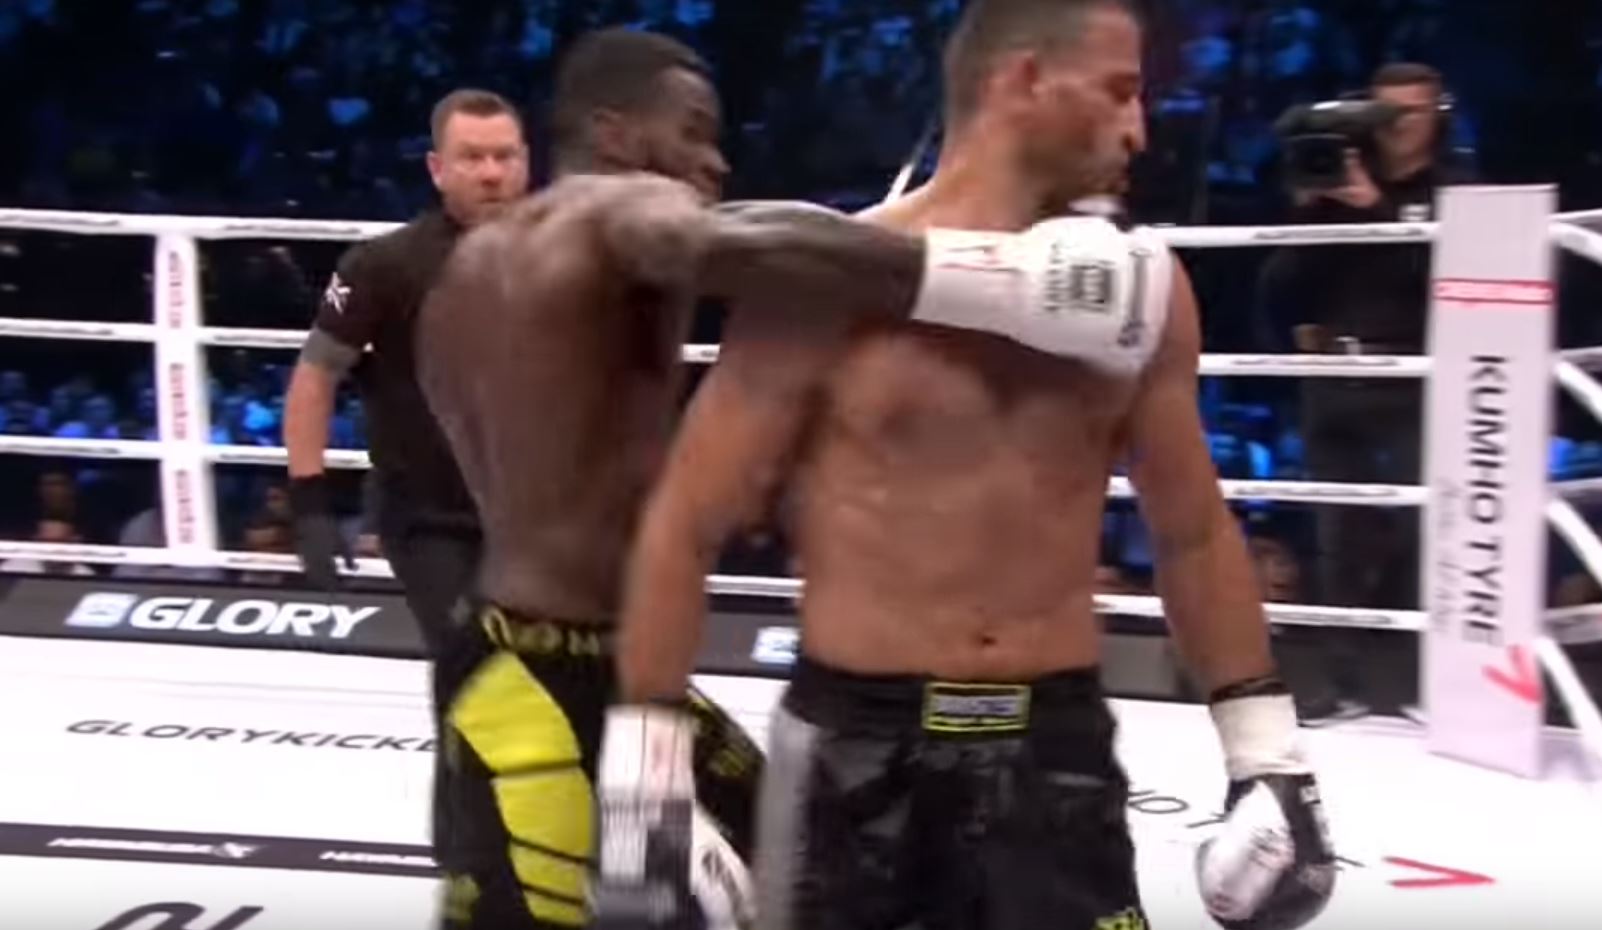 Le kick boxer a frappé son adversaire qui s'éloignait de dos.